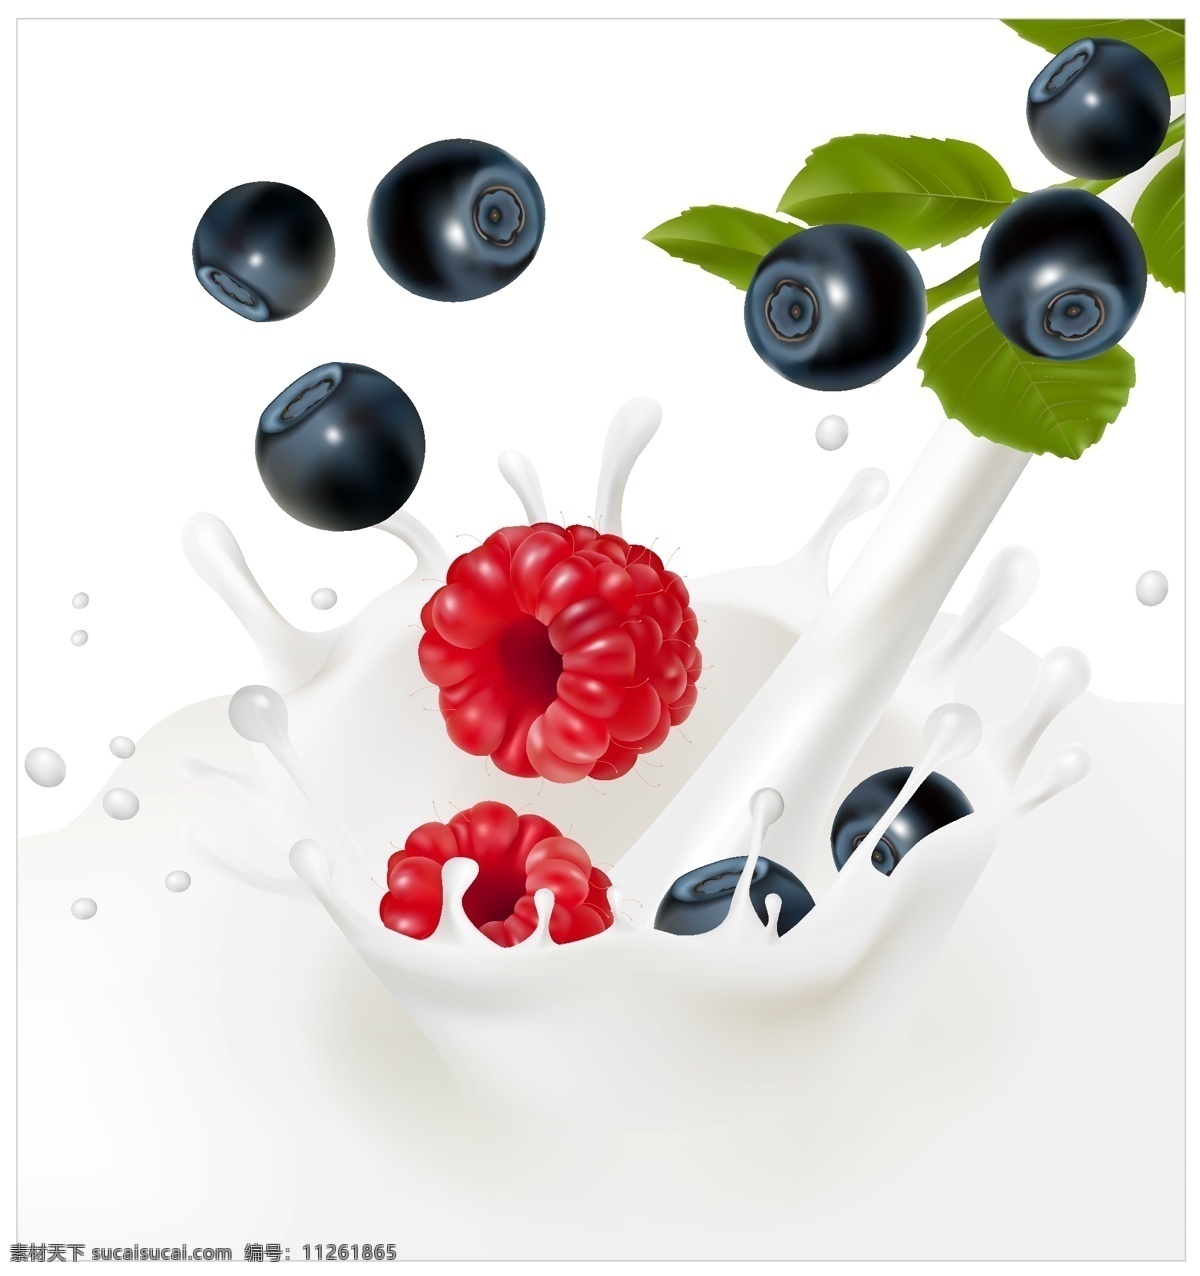 动感牛奶 牛奶喷溅 新鲜水果 卡通水果 果实 倒牛奶 餐饮美食 生活百科 矢量素材